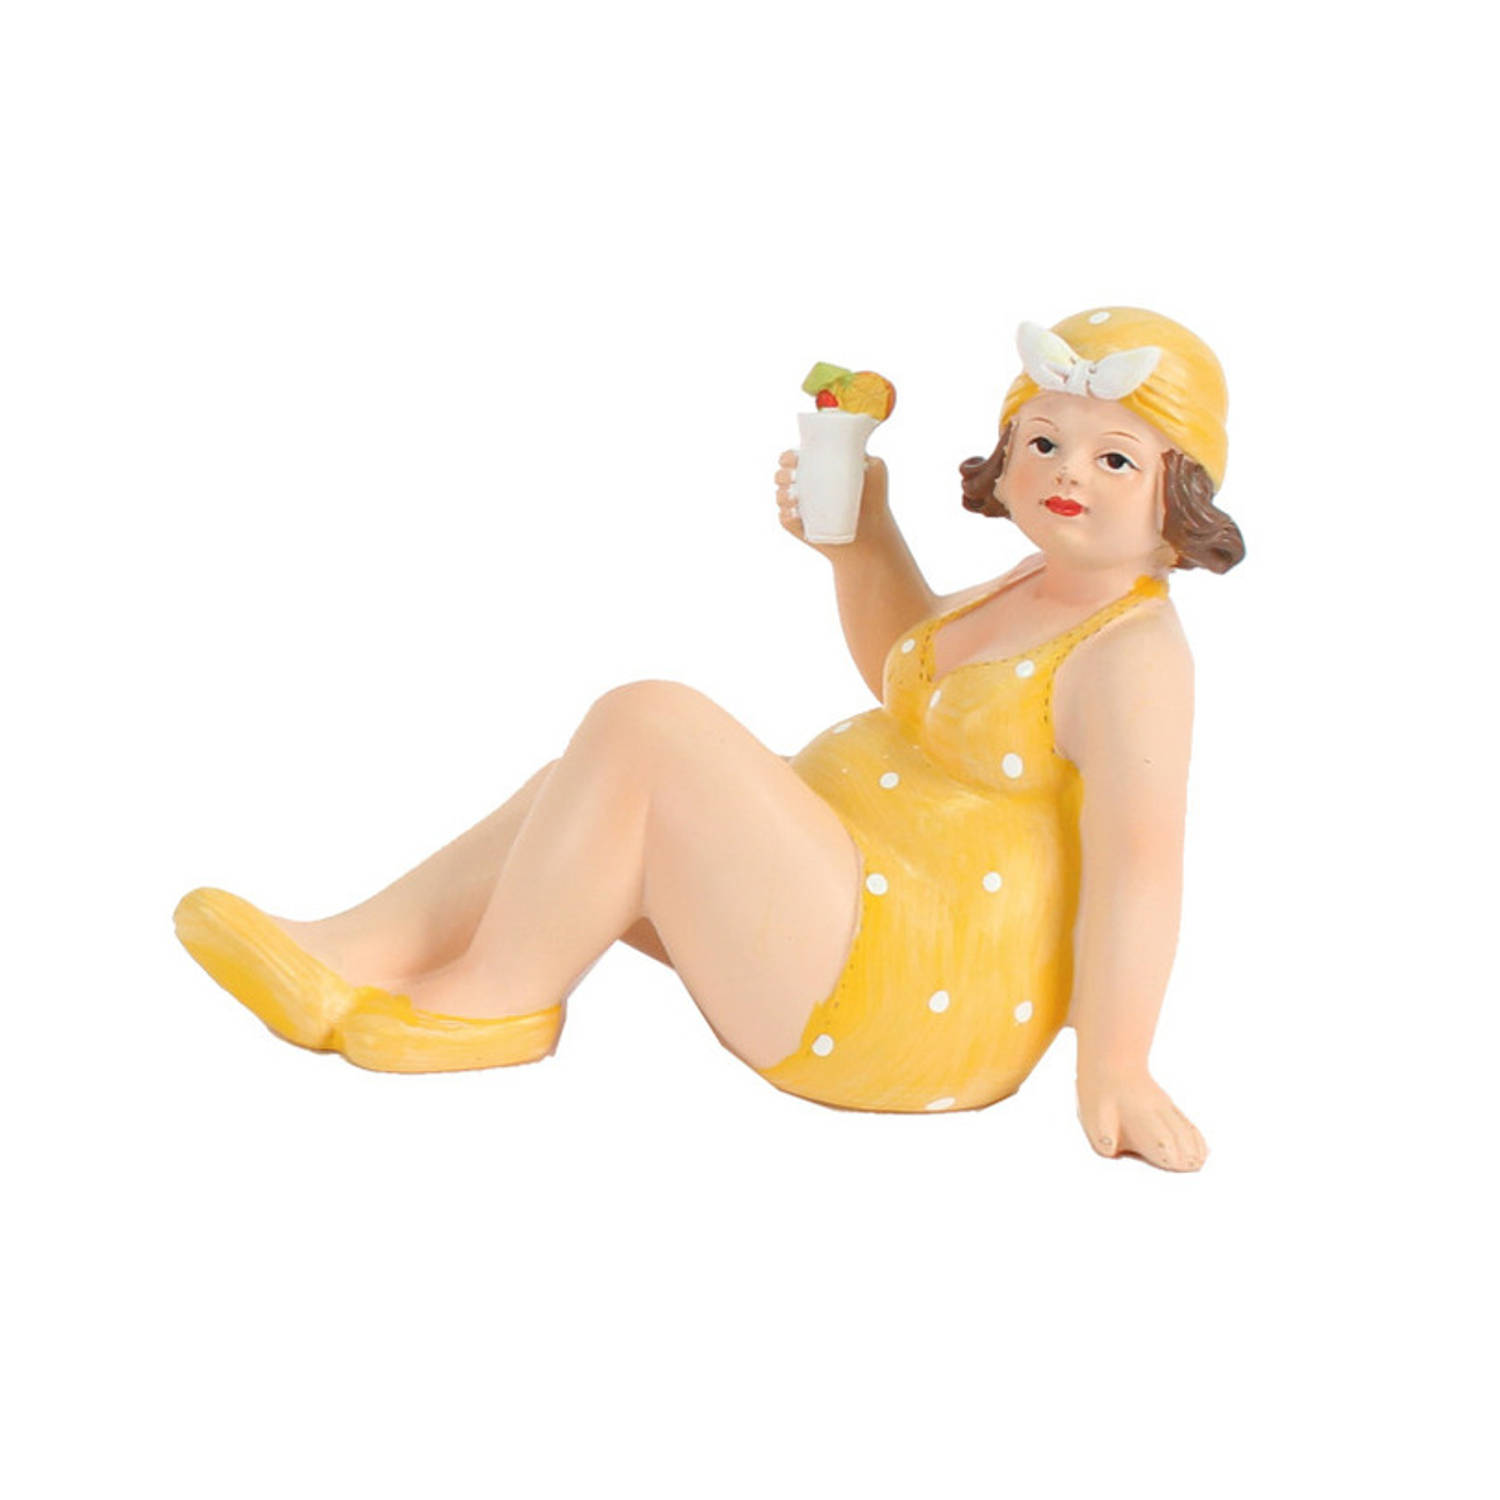 Home decoratie beeldje dikke dame zittend geel badpak 17 cm Beeldjes